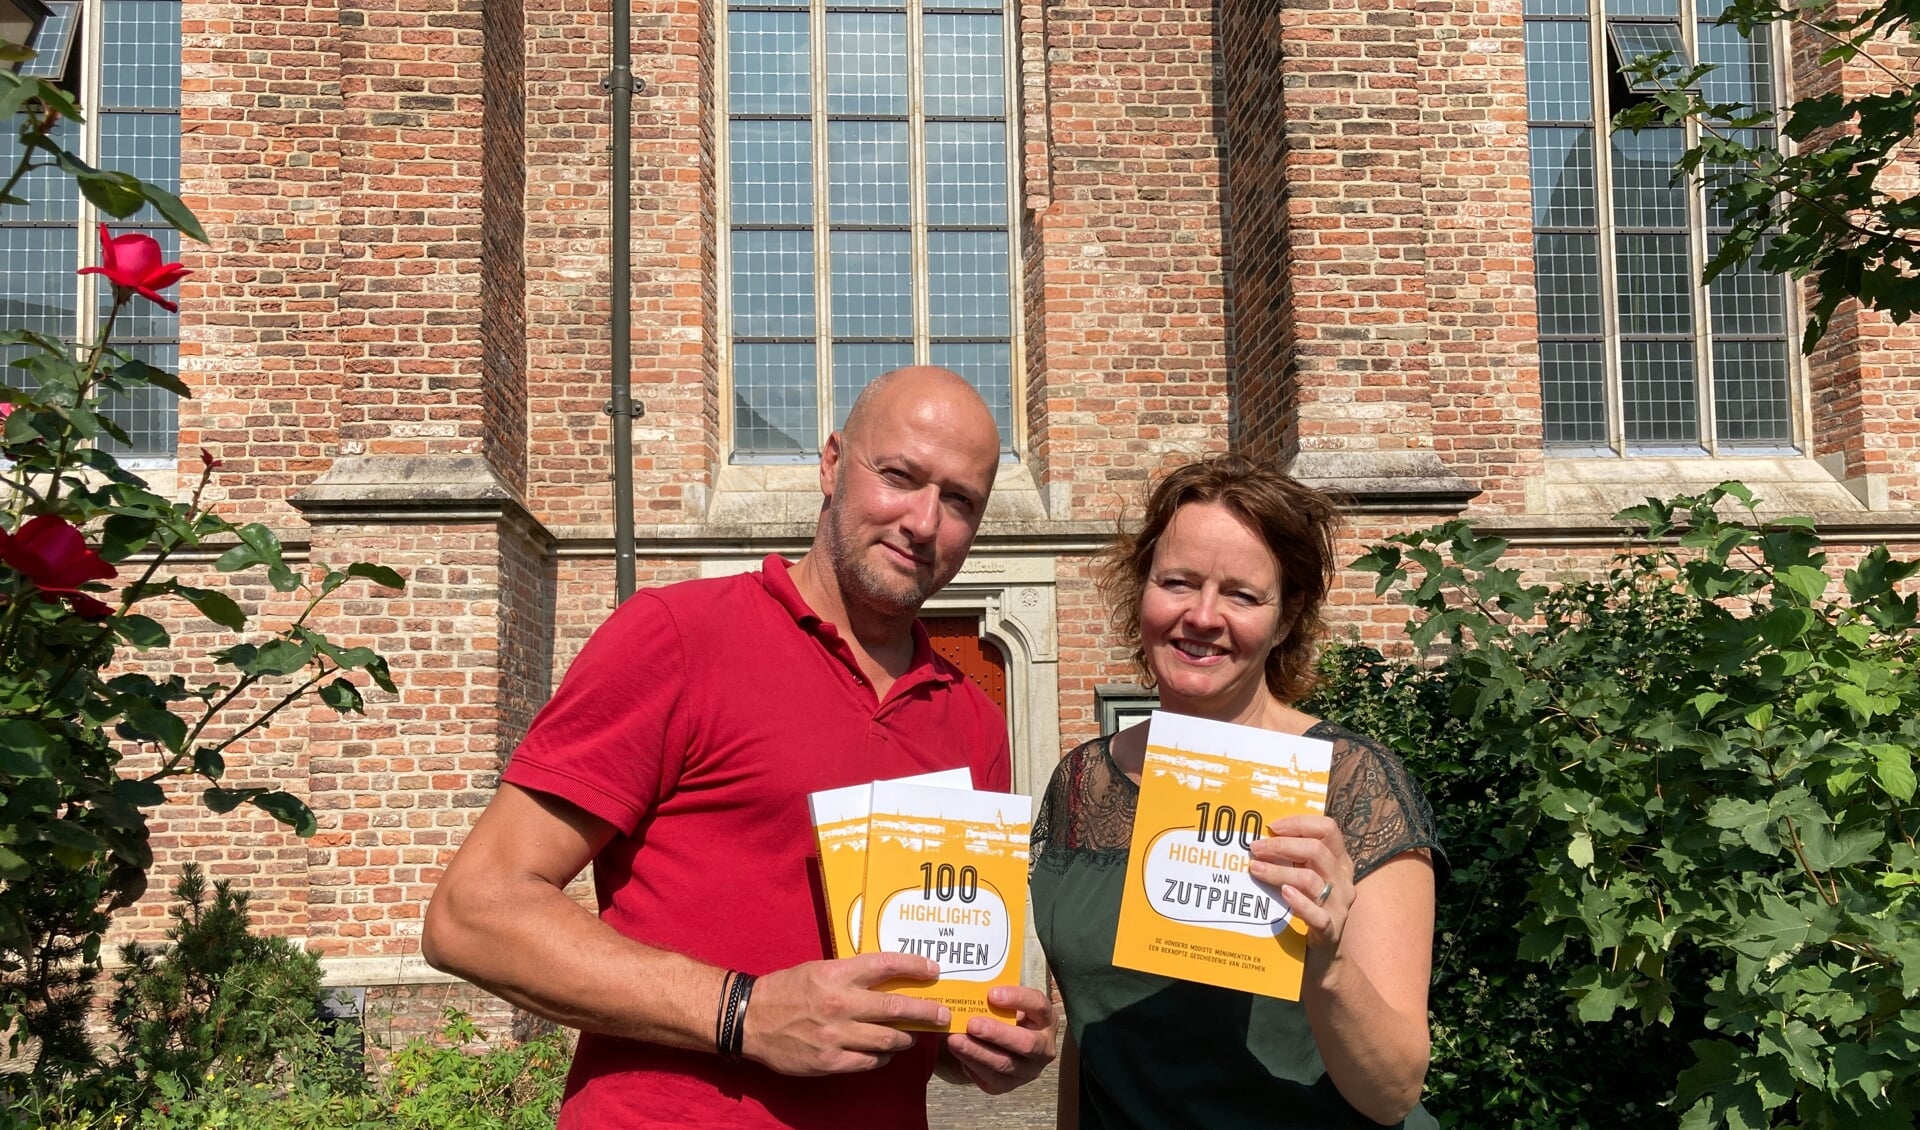 Brigiet Bluiminck en Berthil van den Brink zijn de initiatiefnemers van het boek '100 Highlights van Zutphen'. Dit is vanaf heden te koop en kost 12,50 euro. Foto: Berthil van den Brink